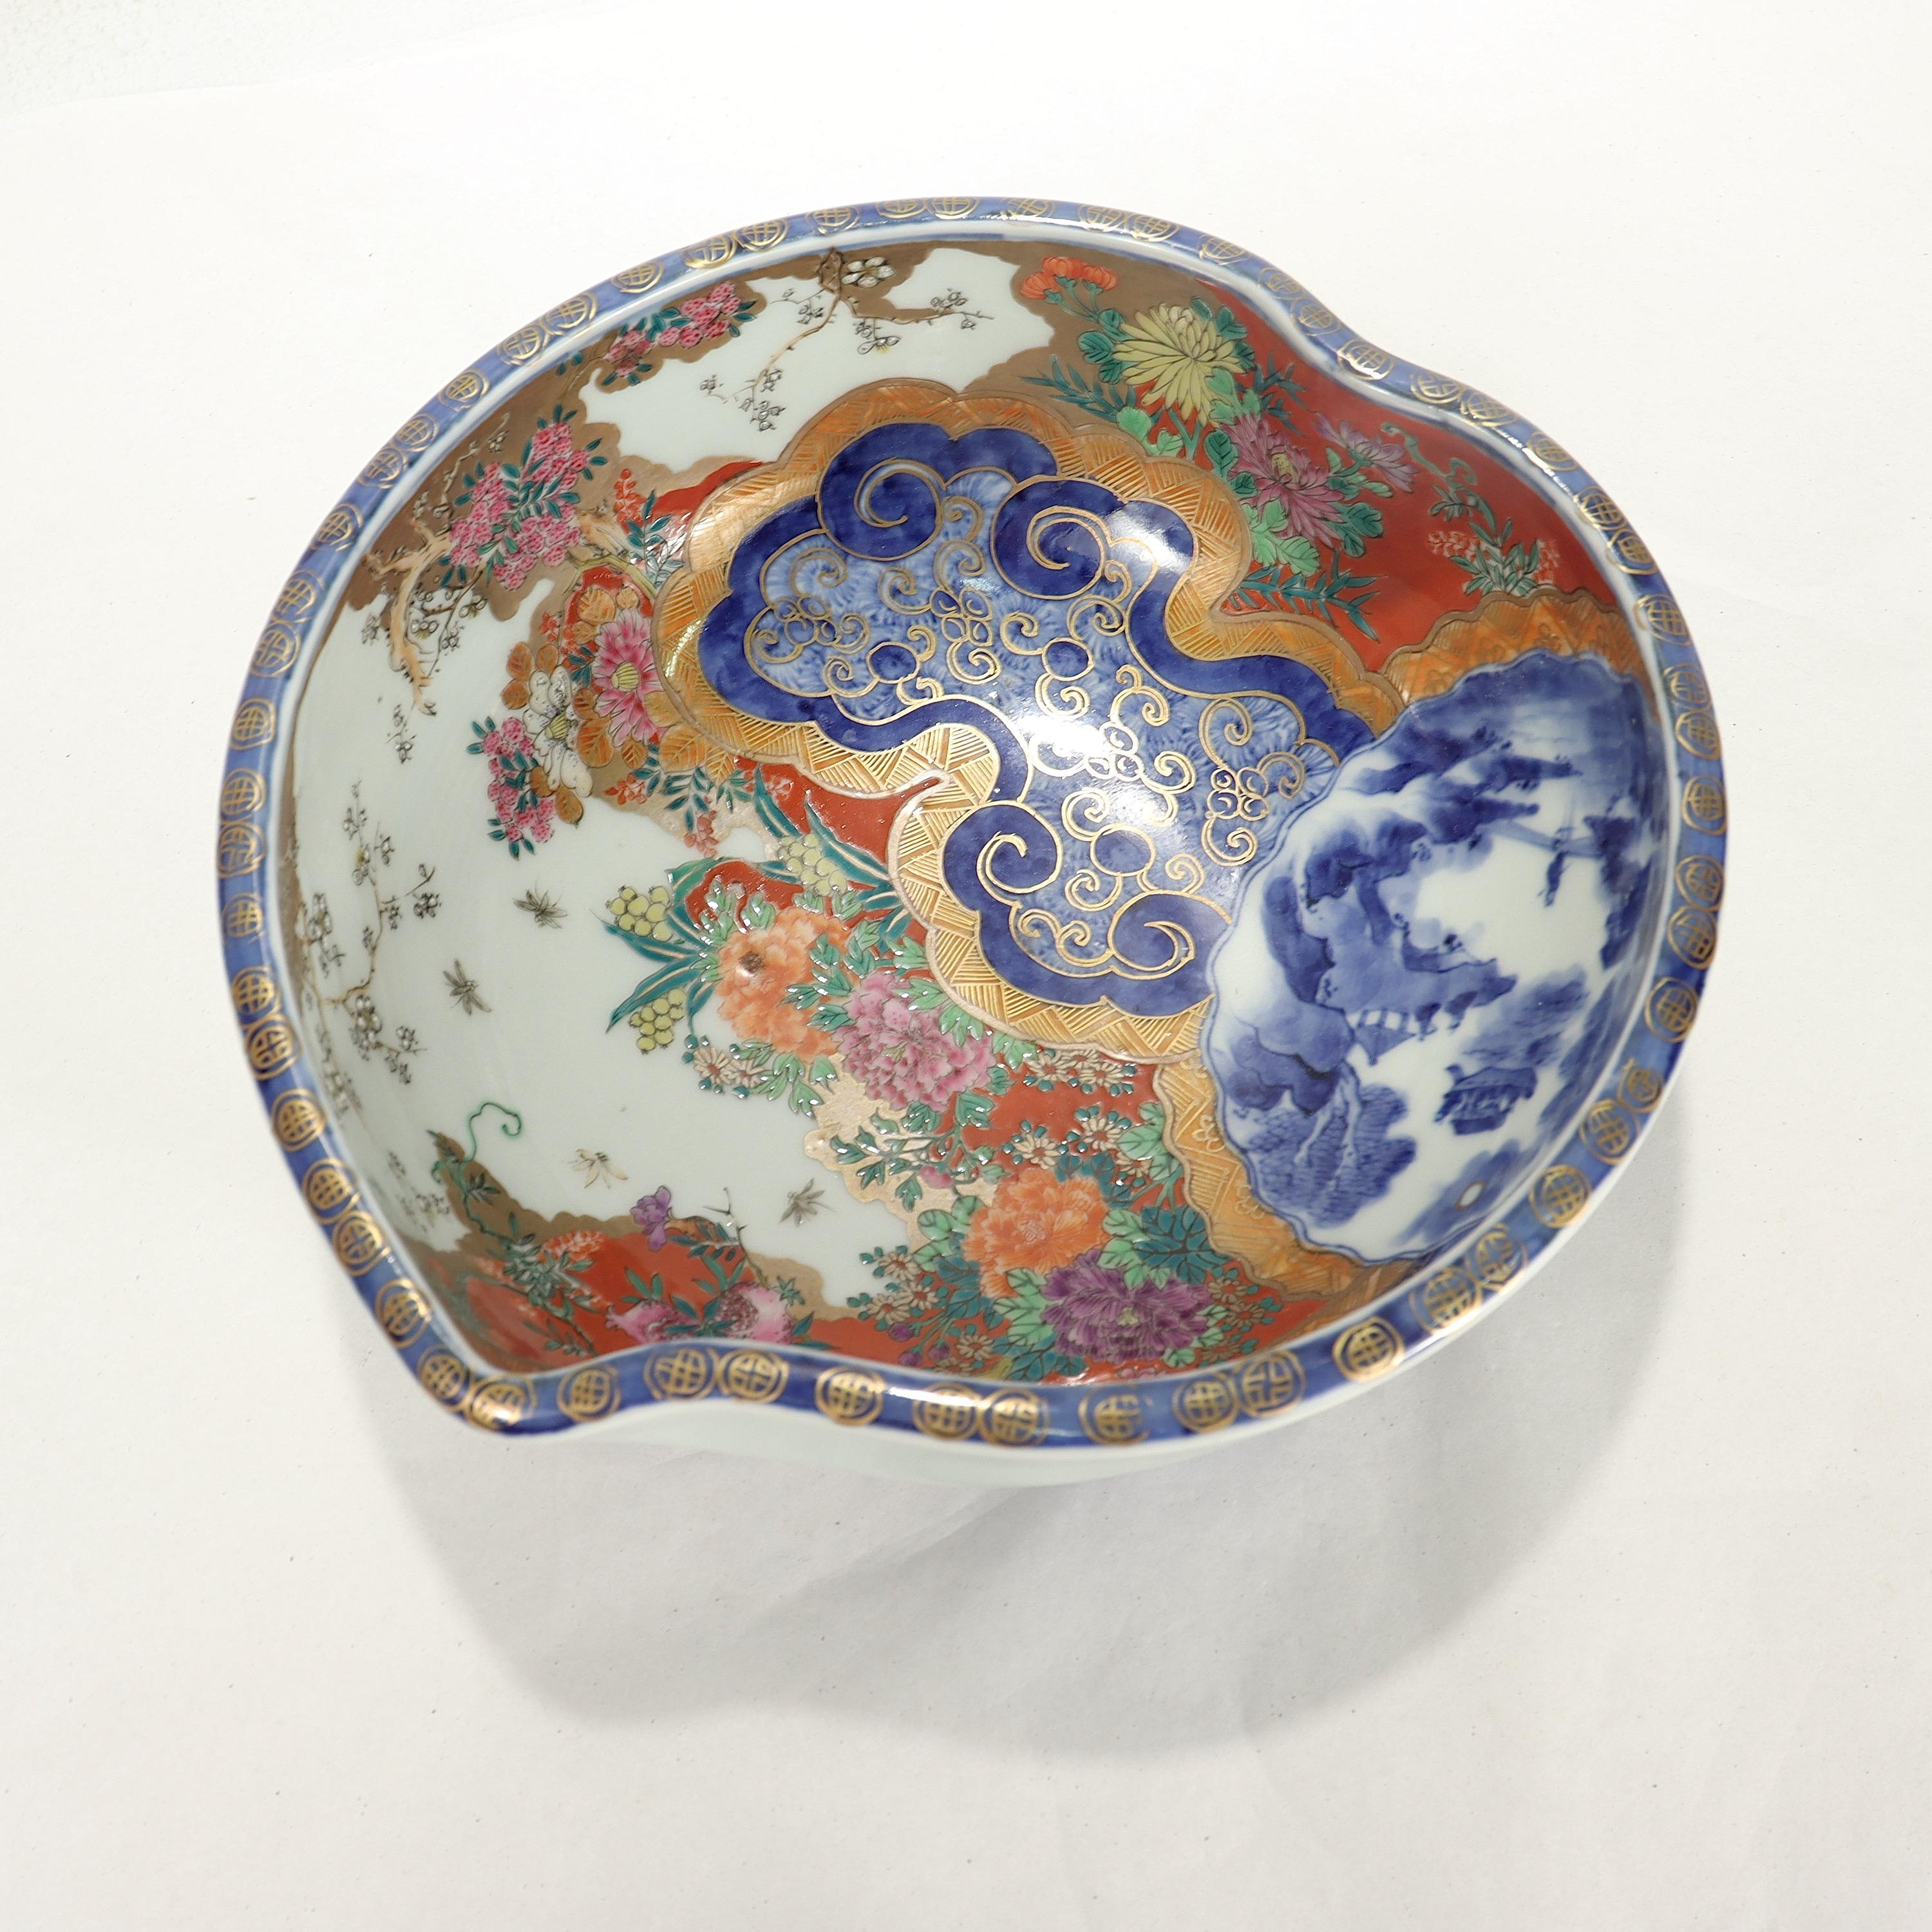 Eine schöne antike signierte japanische Imari-Porzellanschale.

In Form einer Schale mit pflaumenartiger Gestalt.

Durchgehend mit exquisitem, detailliert gemaltem oder emailliertem Dekor, blauem Unterglasurdekor und umfangreicher Vergoldung